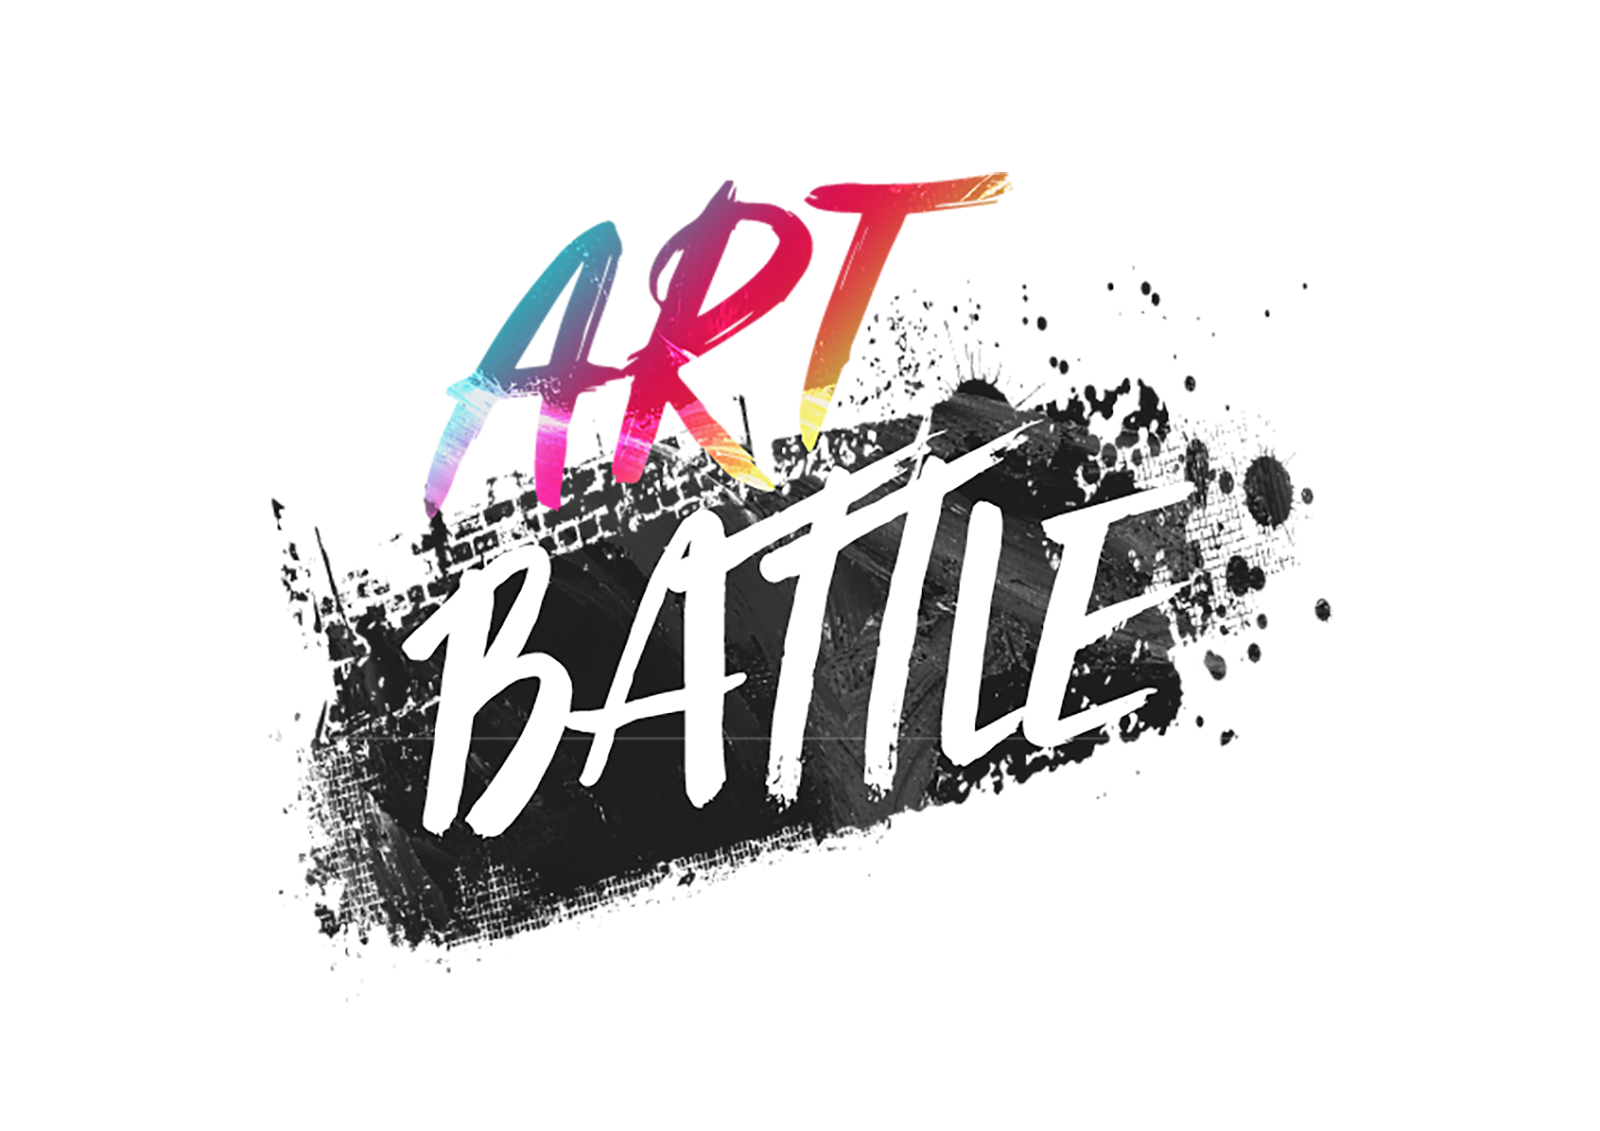 Art Battle